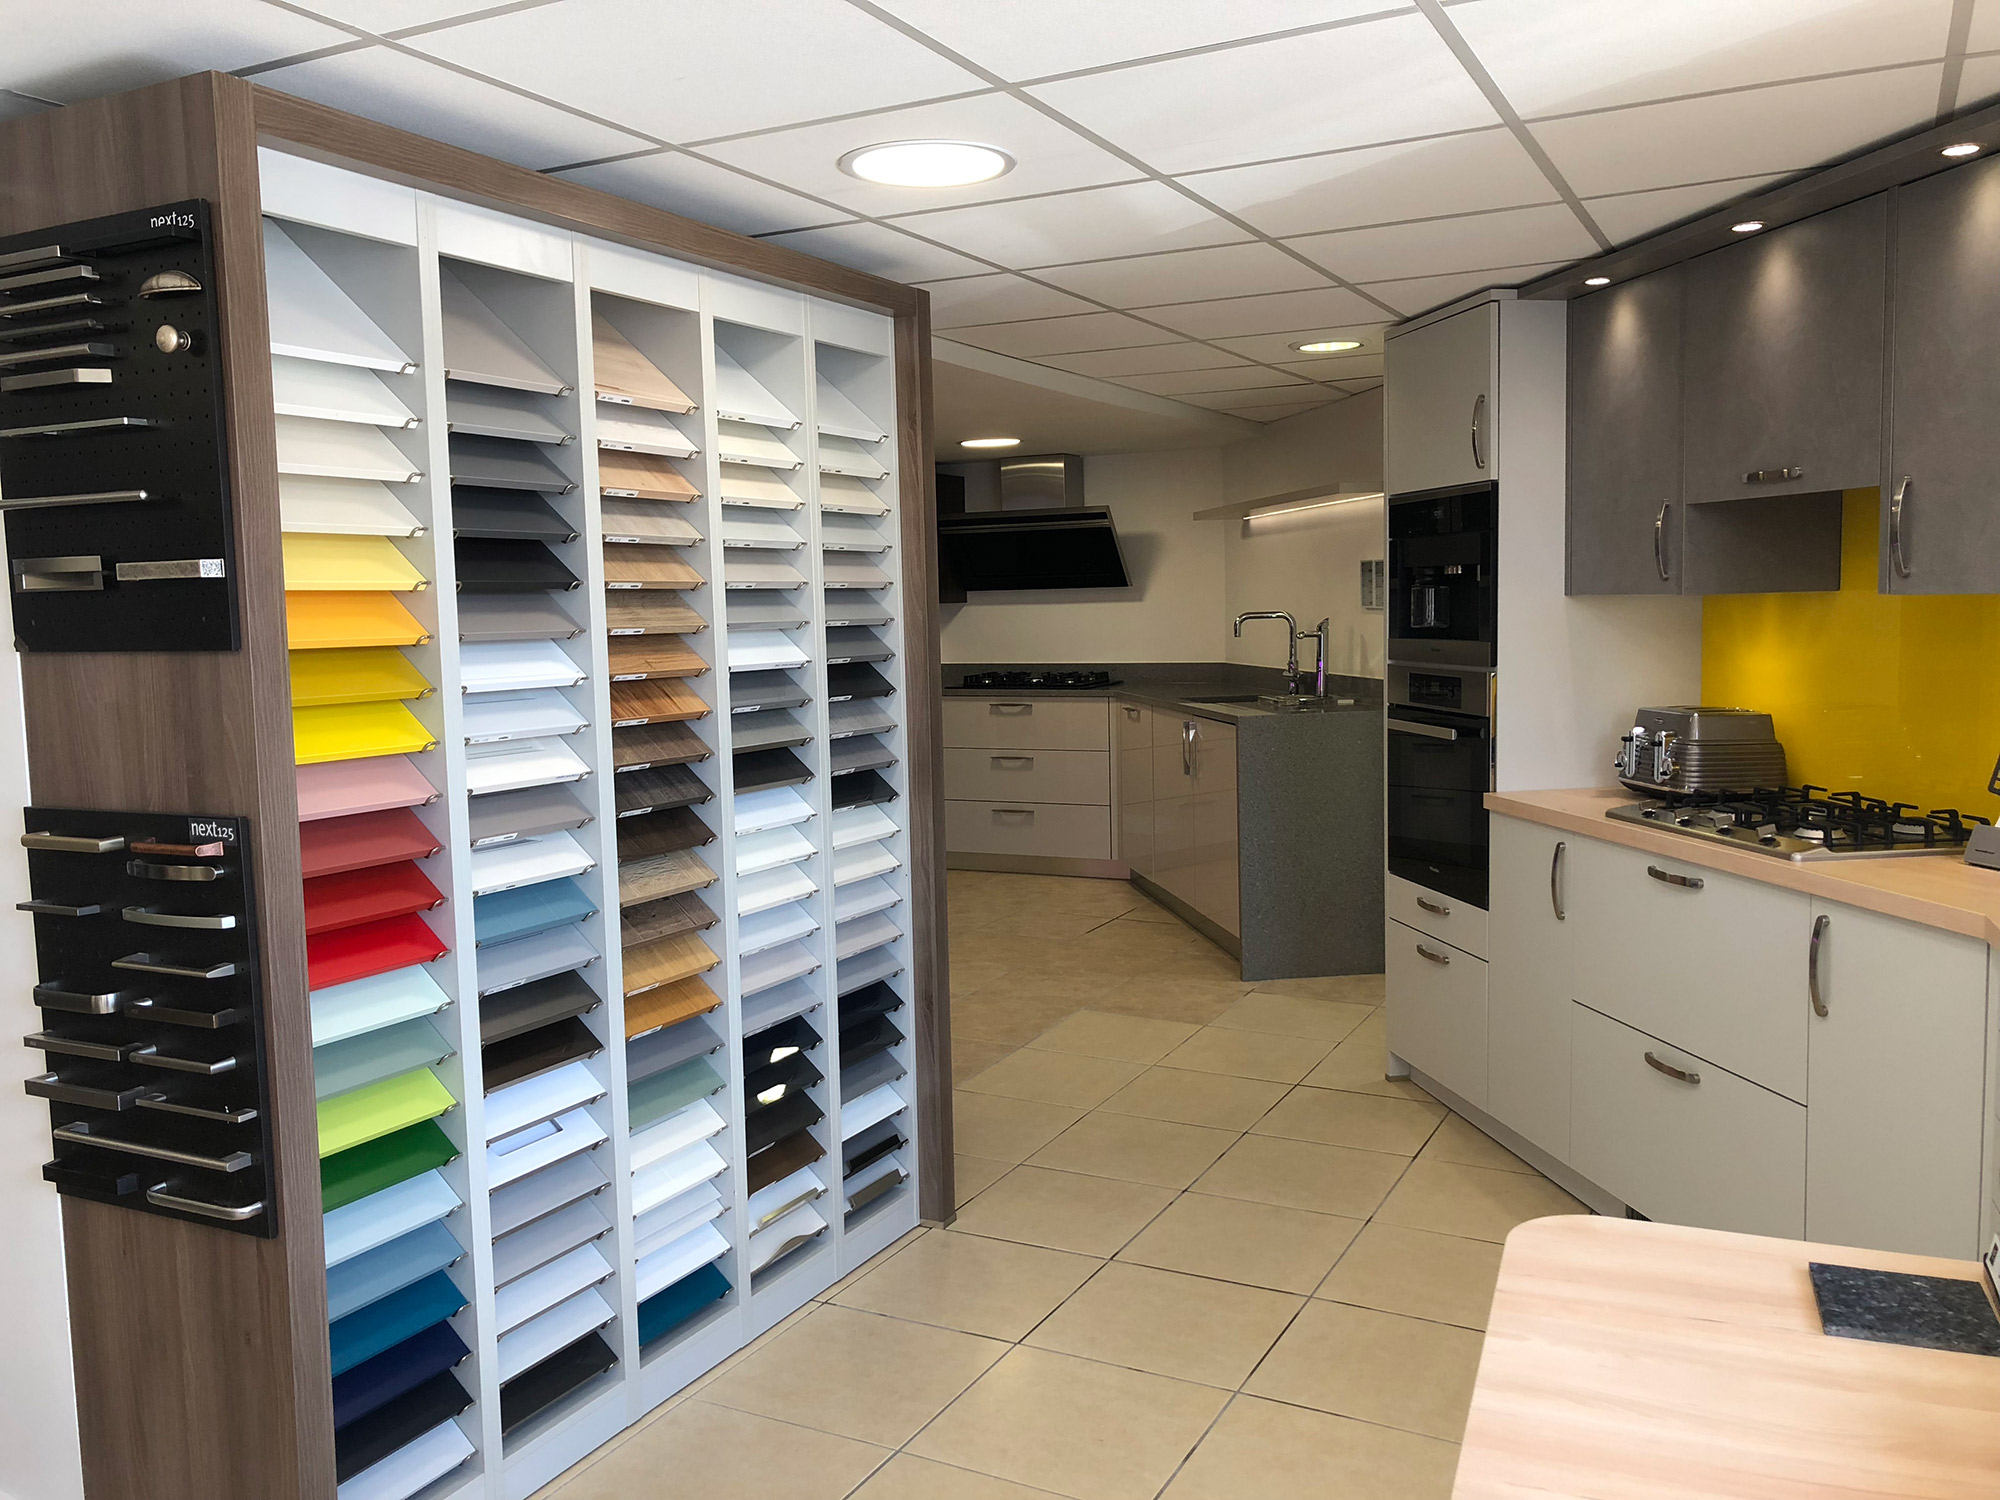 kitchen design showrooms in inlsnd empire